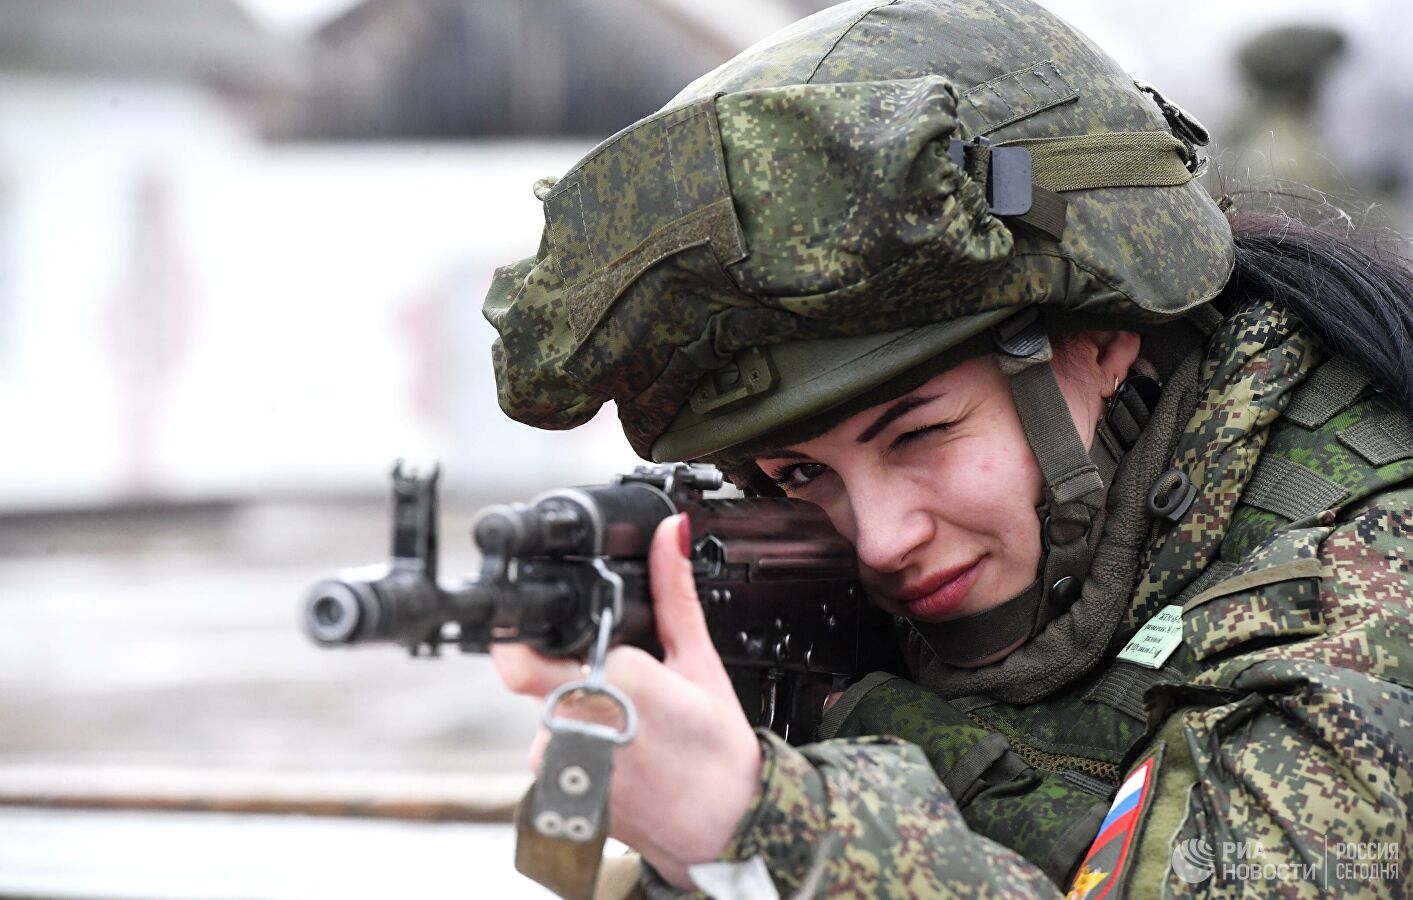 Проверка и оценка уровня физической подготовленности военнослужащих женского пола